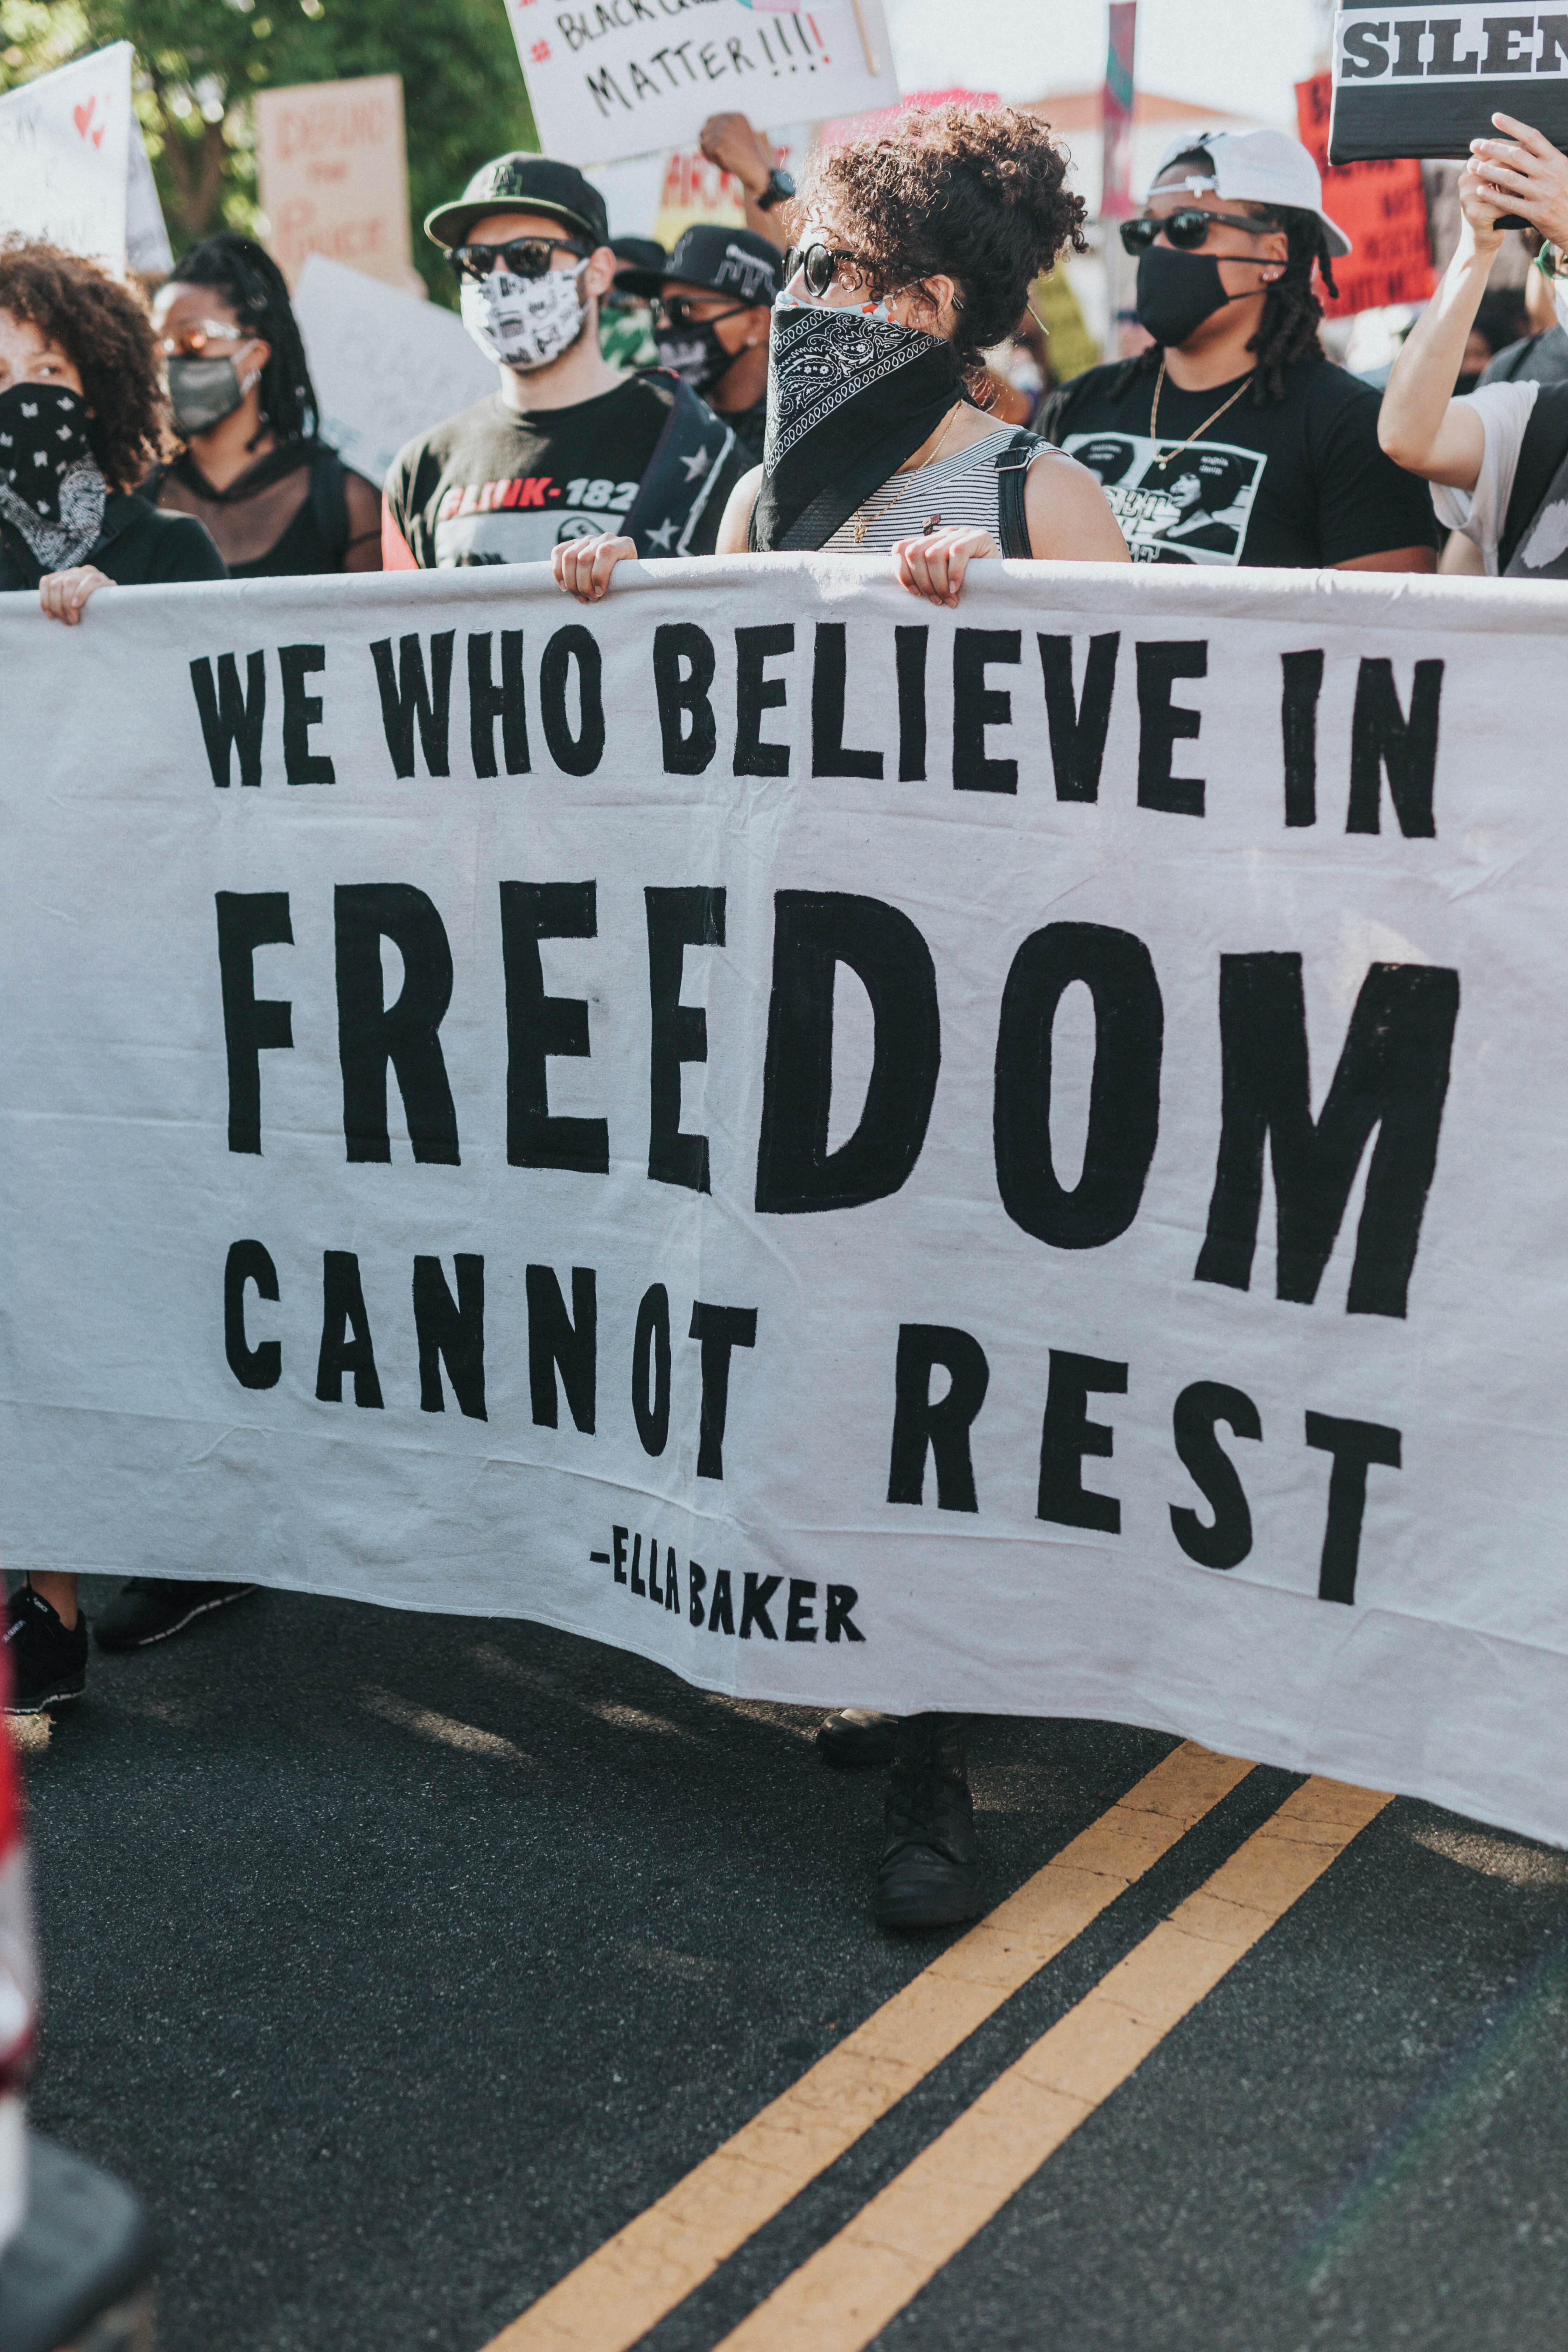 Mennesker med ulik etnisk opprinnelse i demonstrasjonstog med en stor parole der det står "We who believe in freedom cannot rest".